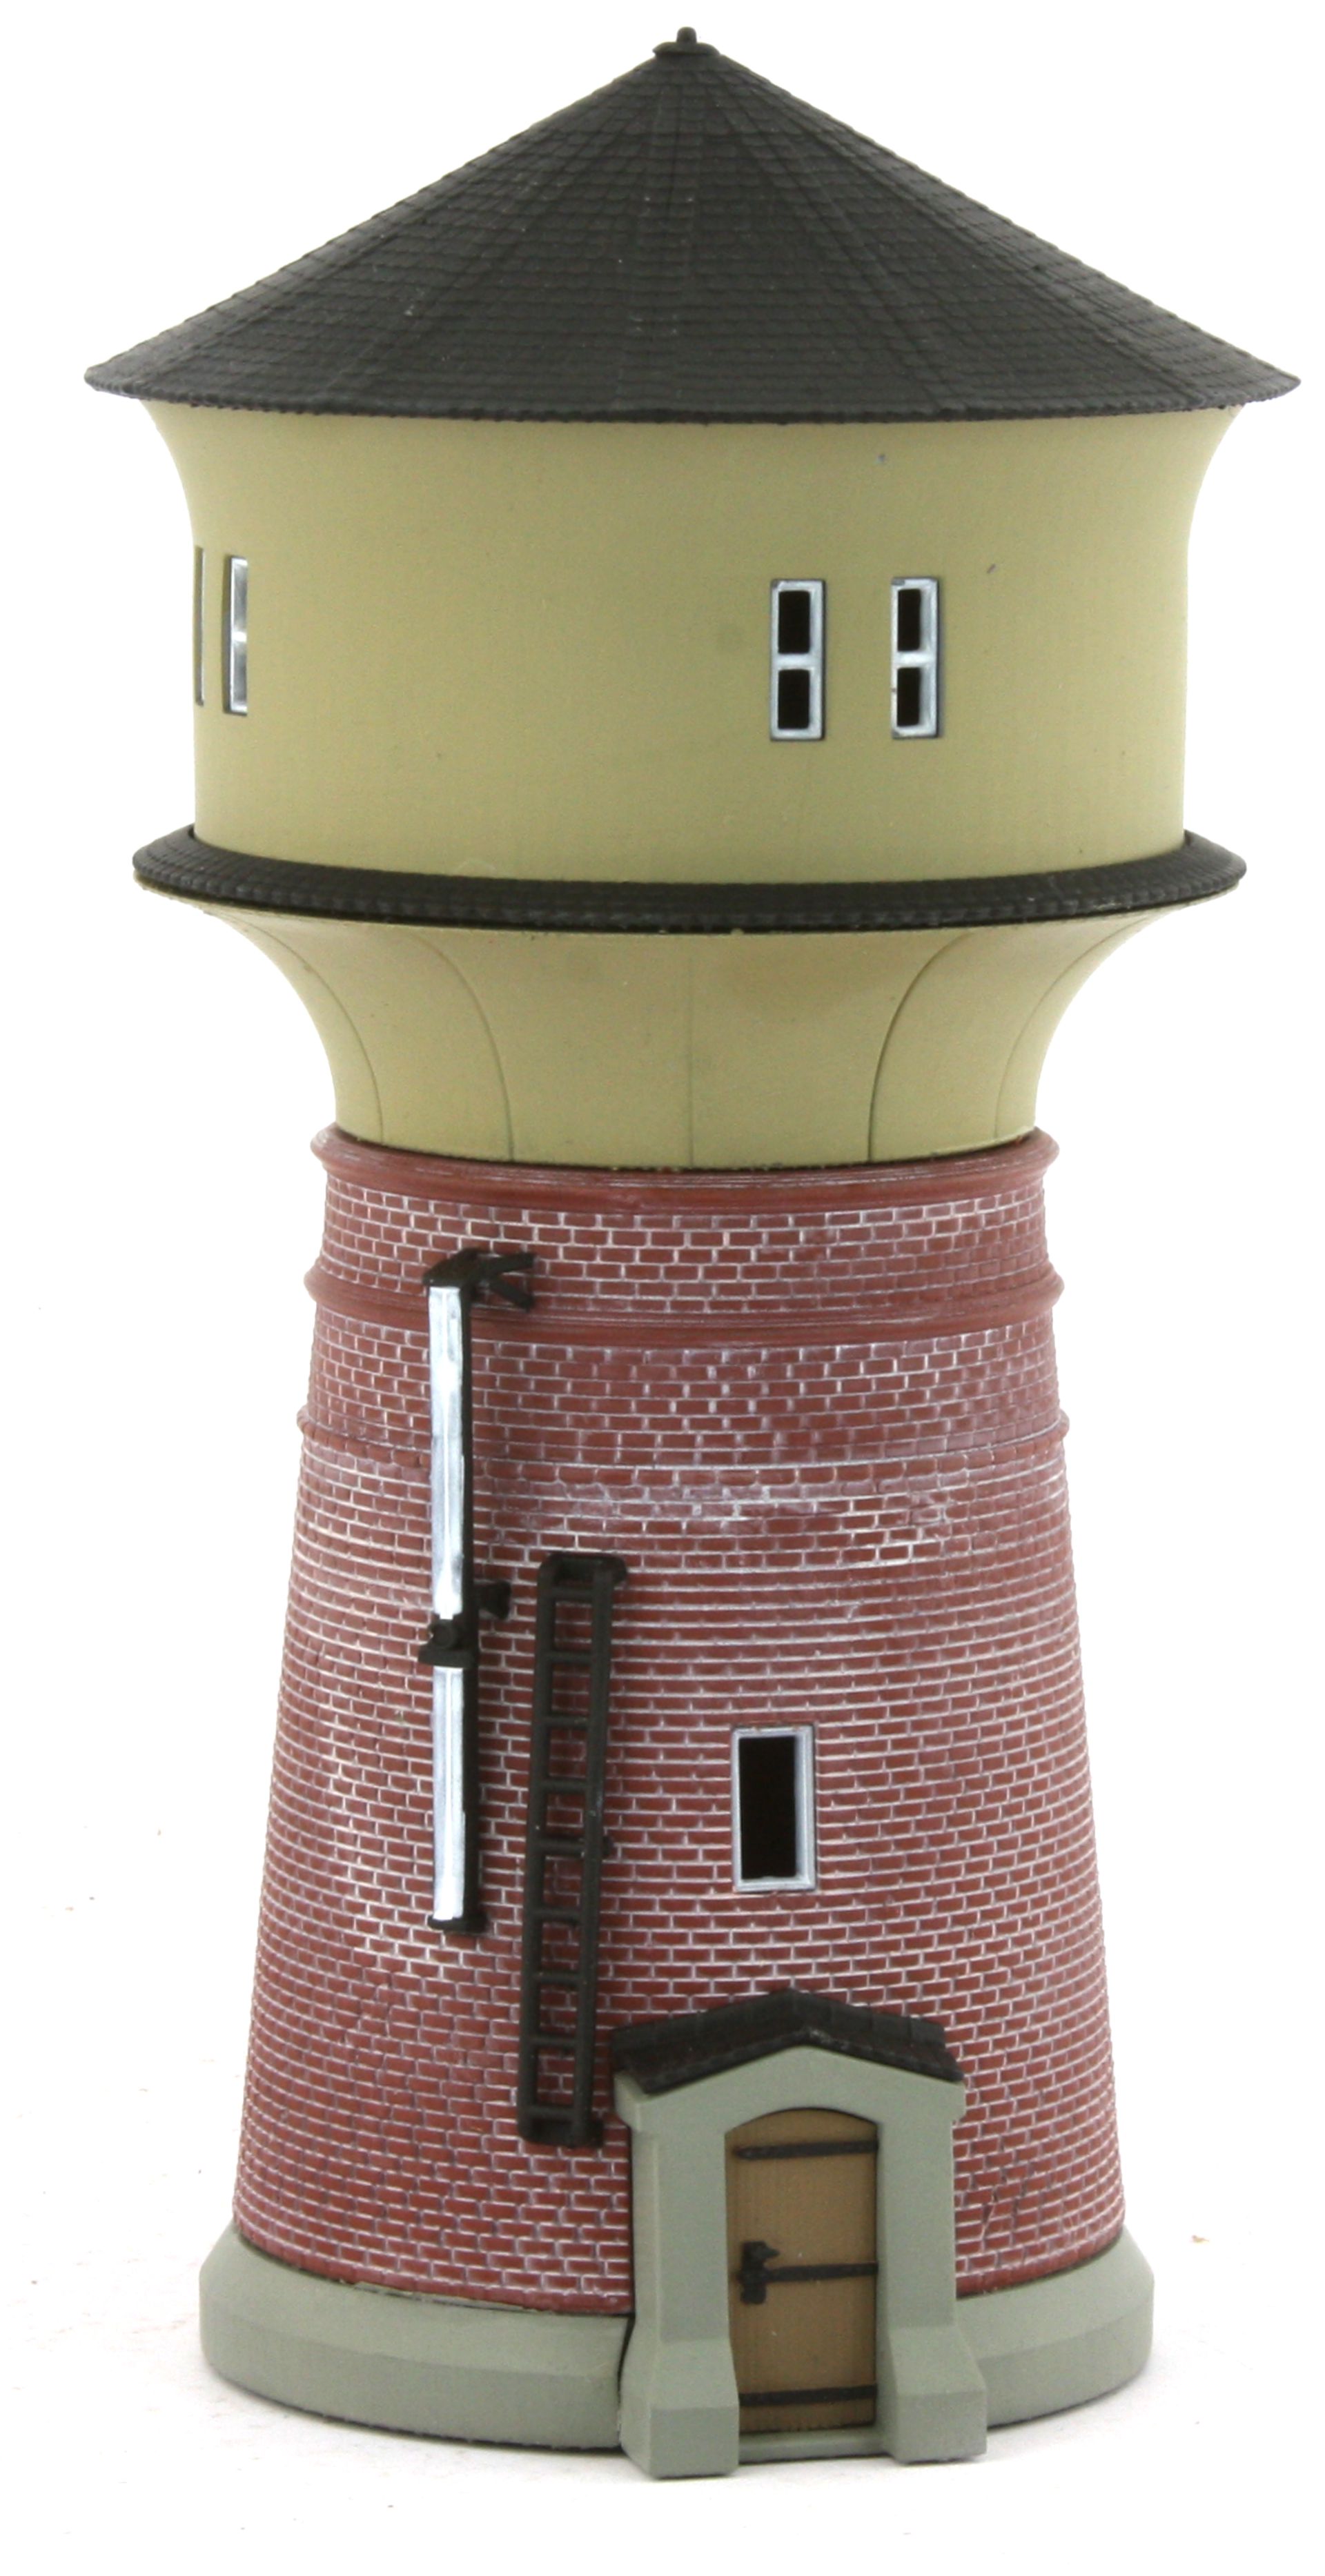 Radestra 214520 - Wasserturm, Höhe 165 mm, coloriertes Fertigmodell